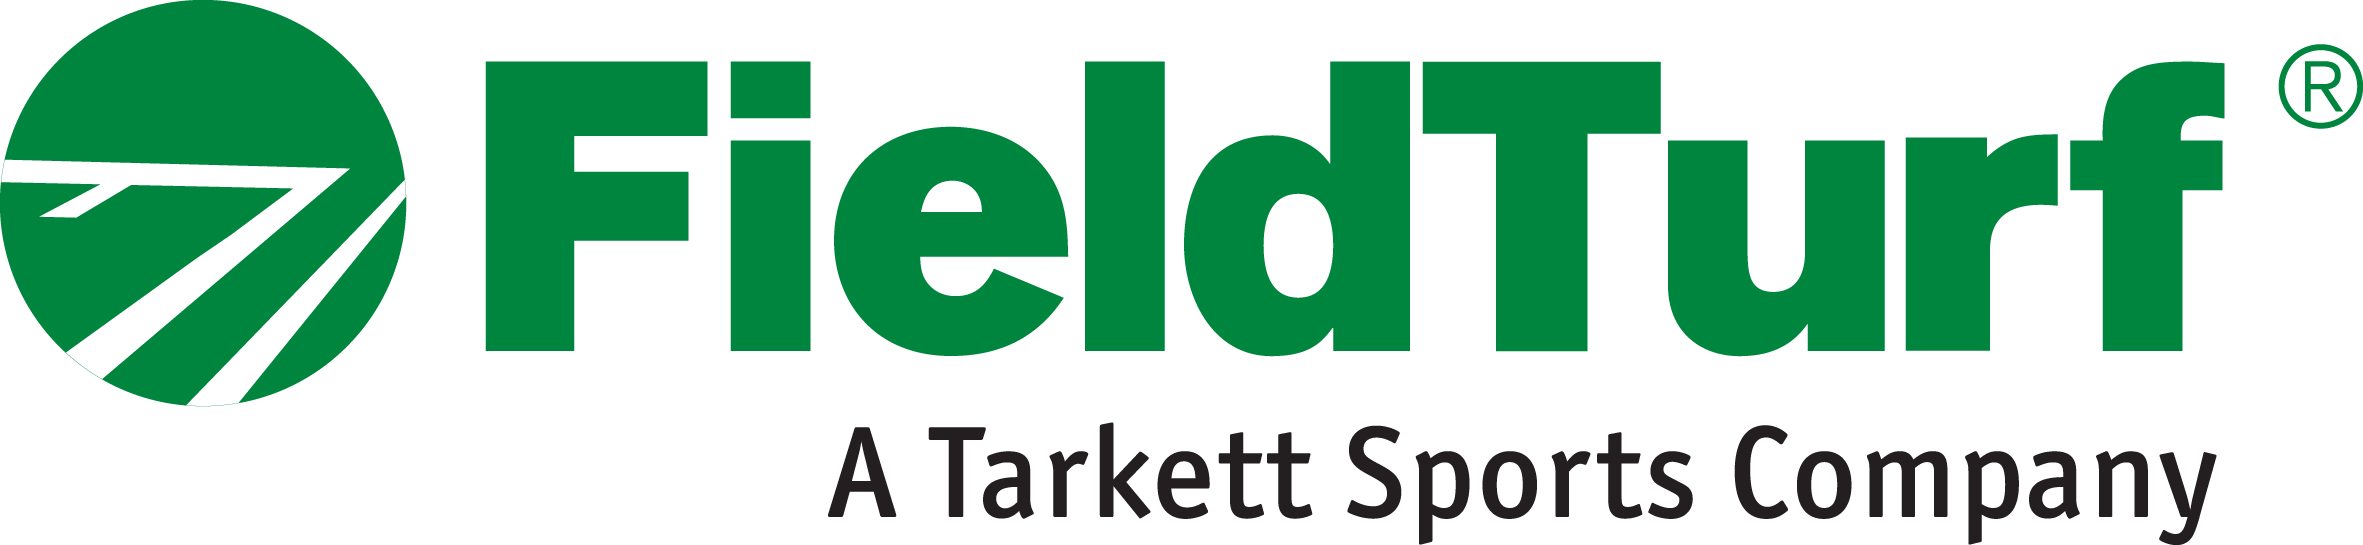 Field turf logo